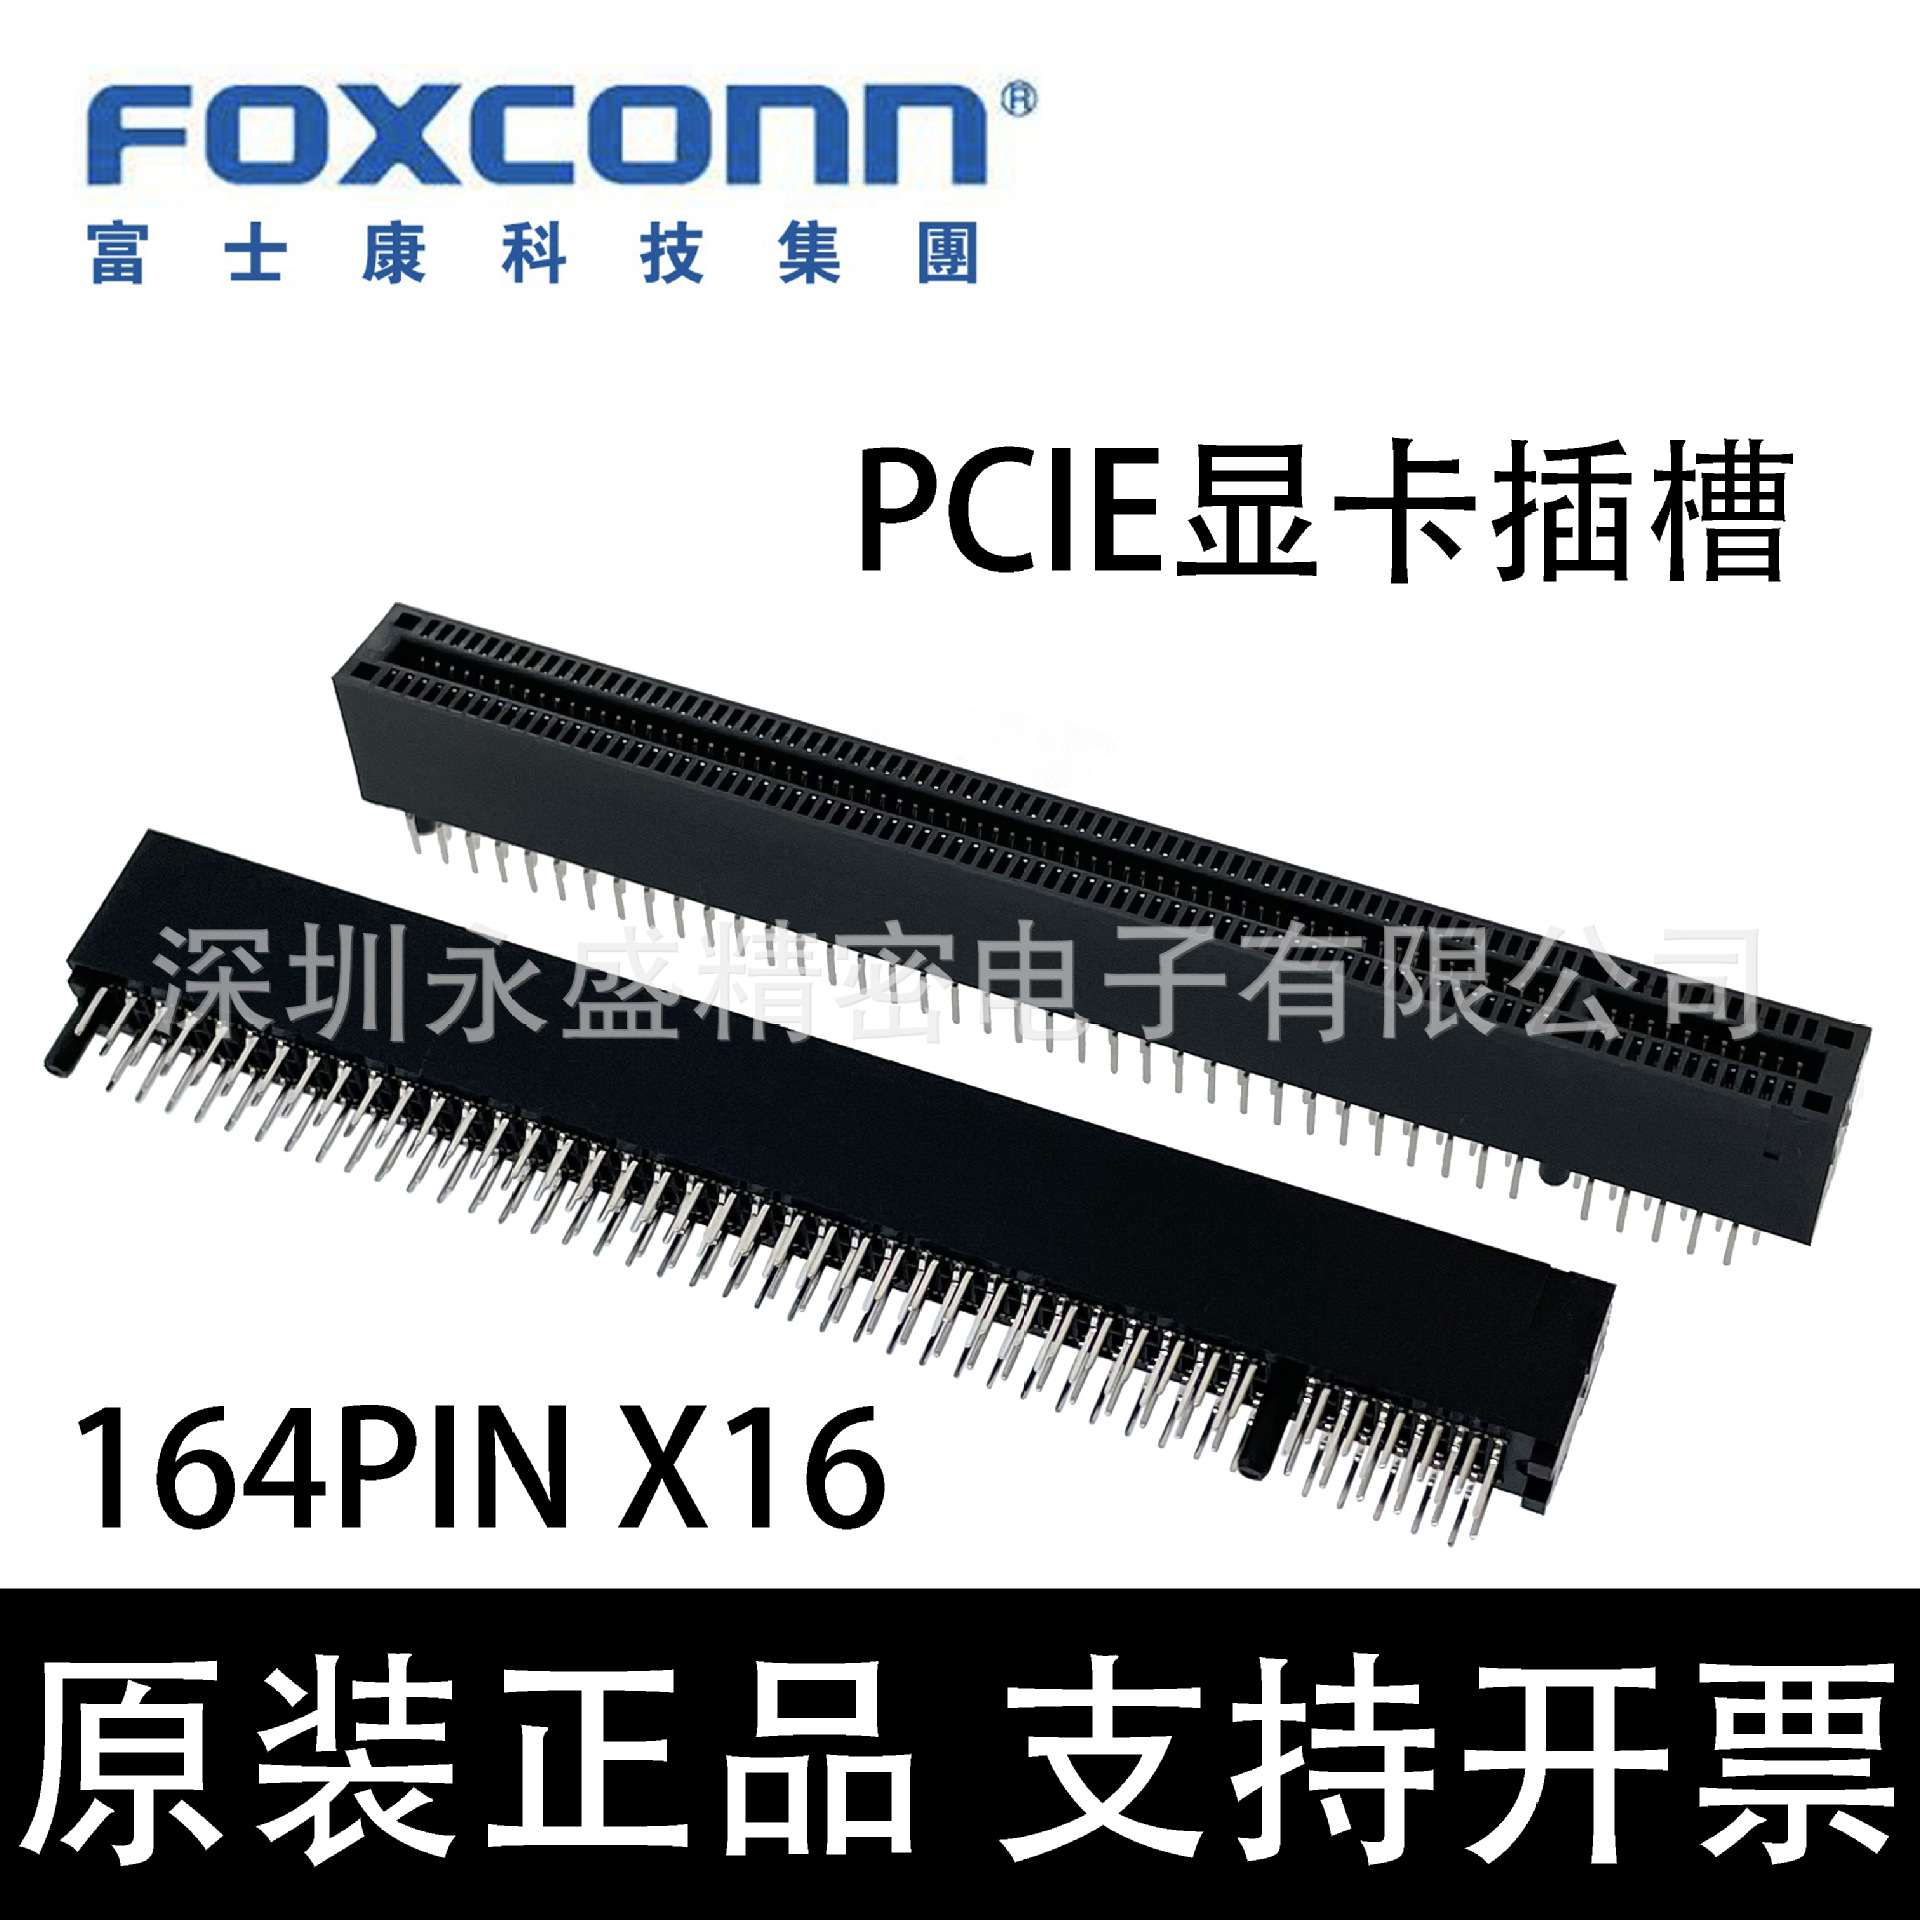 2EG08227-D2D-DF Foxconn/富士康 PCIE显卡插槽 X16 164PIN 卡座